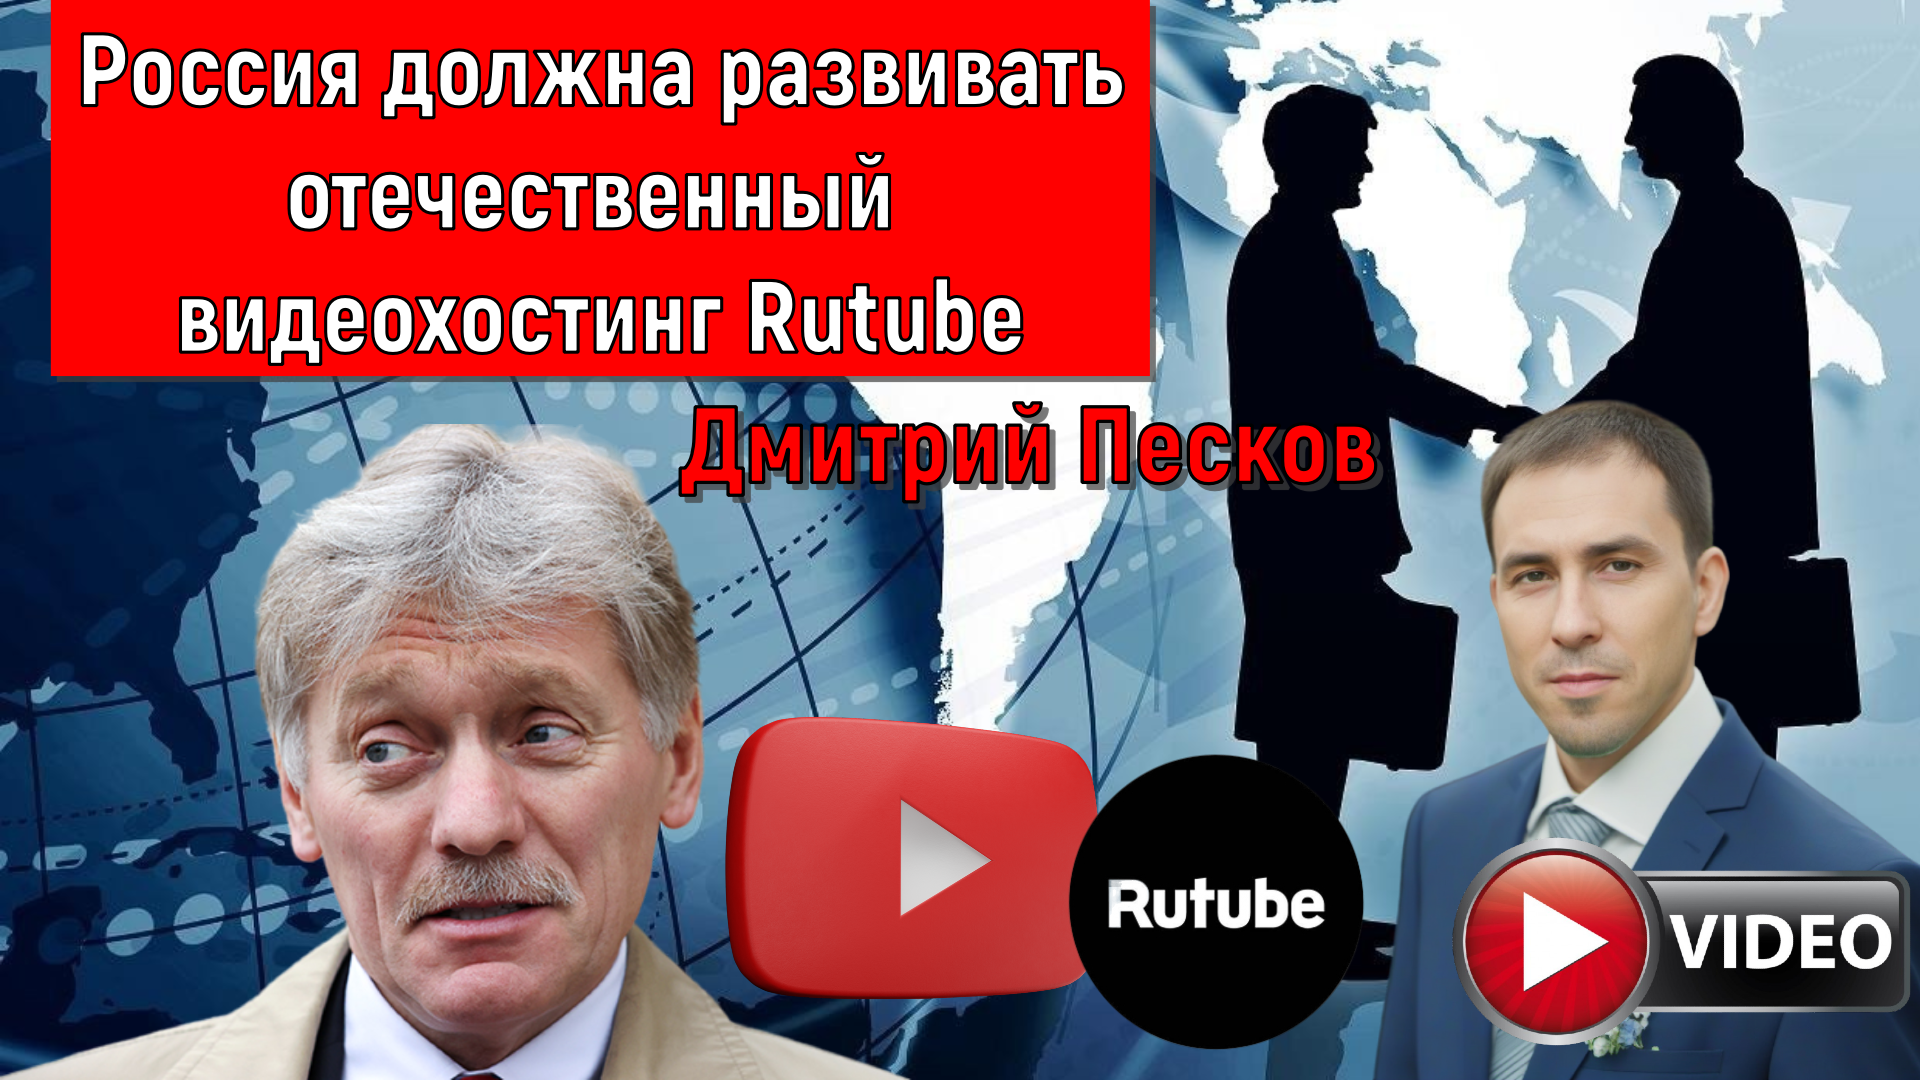 Россия ДОЛЖНА развивать видеохостинг RUTUBE